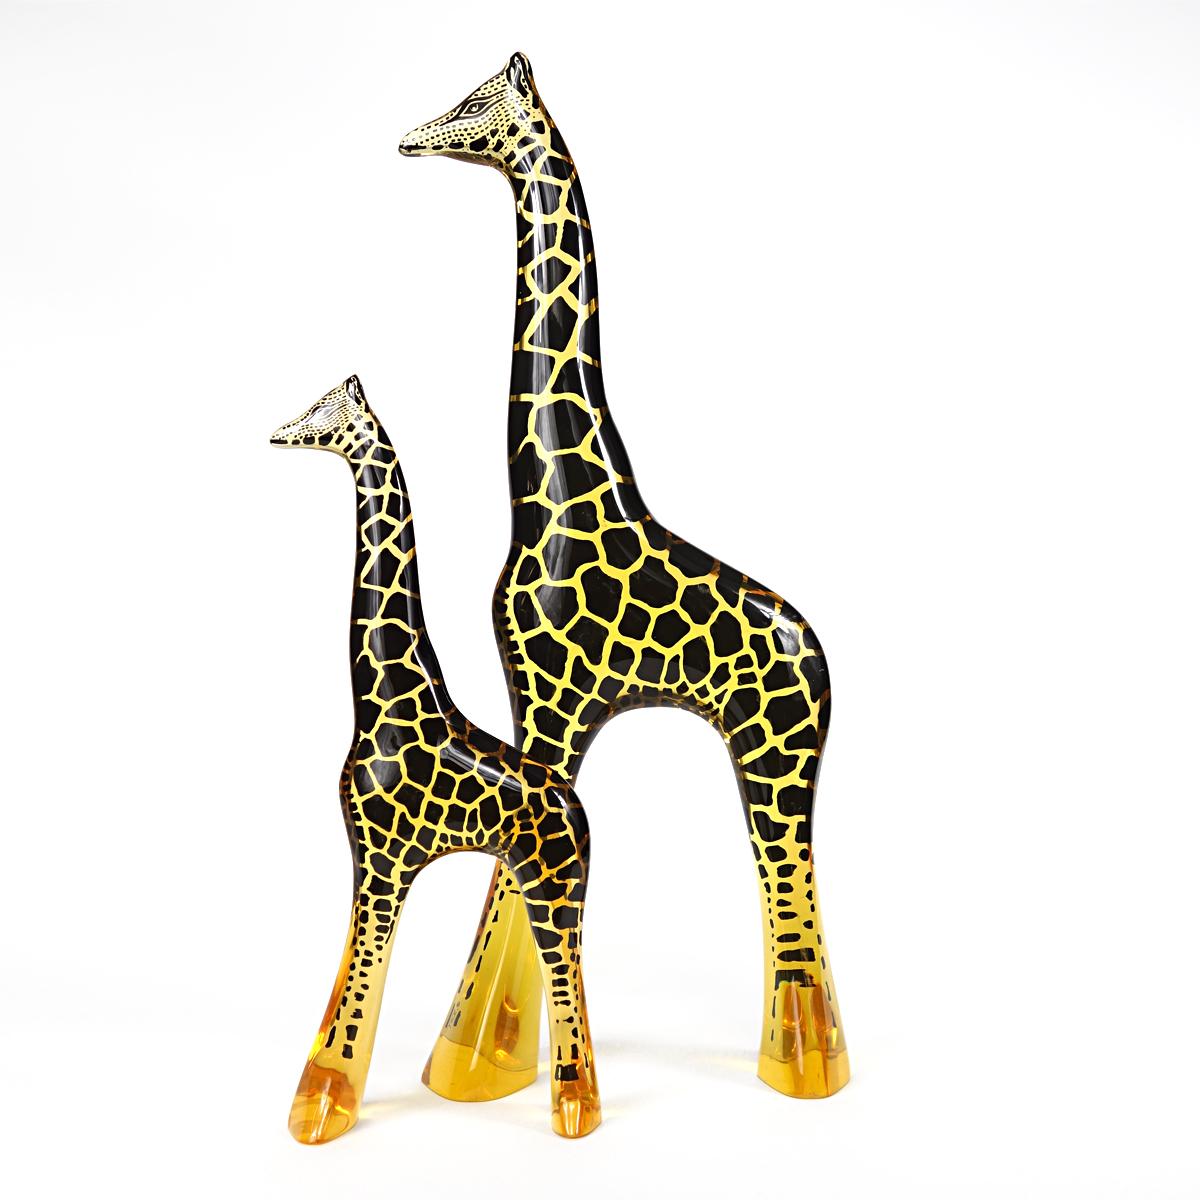 Sehr selten: eine Palatnik-Tierfigur von einem halben Meter Höhe.
Diese Giraffe ist wirklich ein Schmuckstück für jeden Raum.
Es ist fast neu und stammt aus dem unverpackten Inventar eines Geschäfts, das Designstücke verkauft.